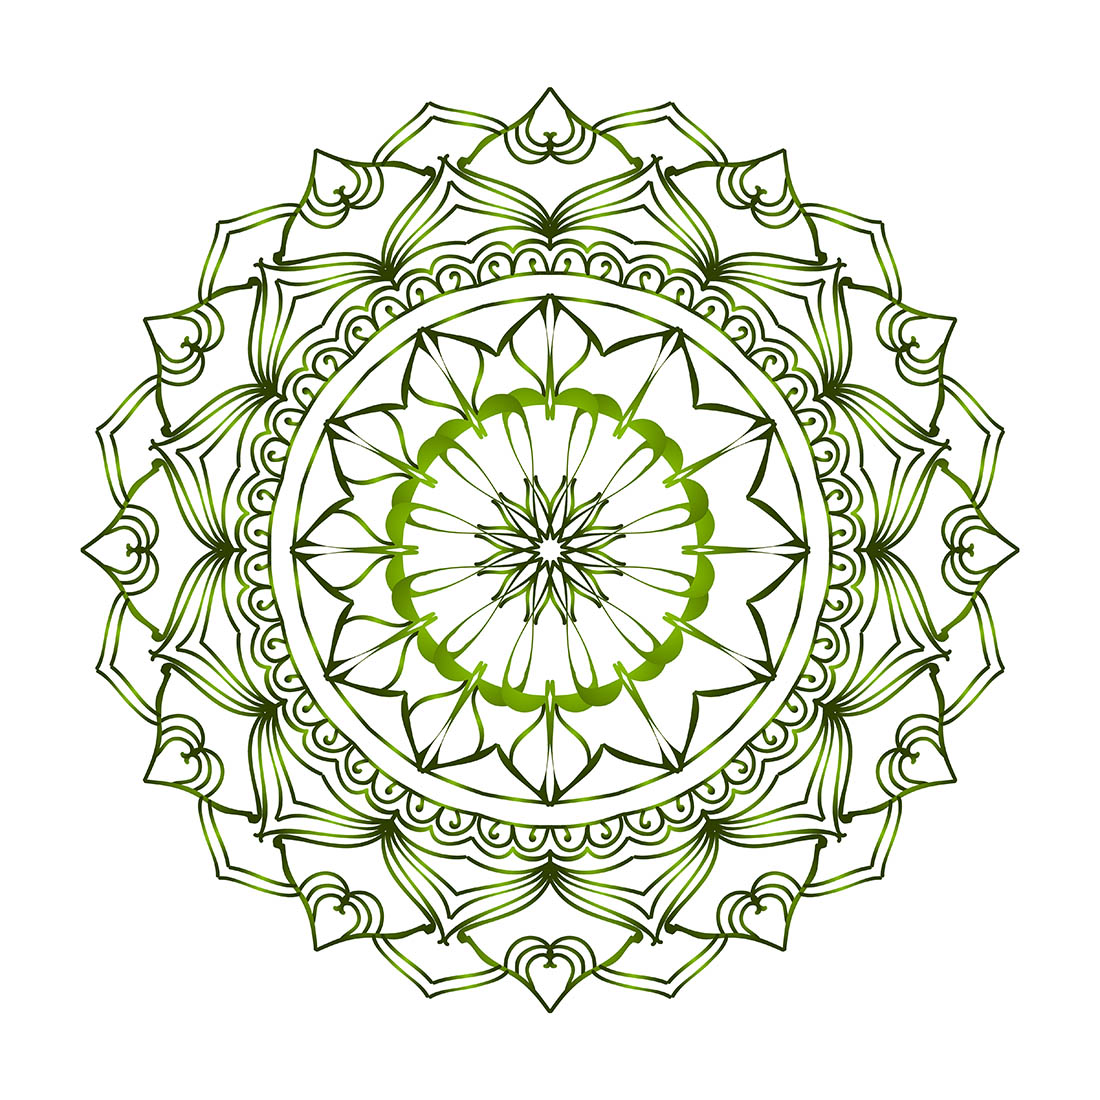 Mandala Drawing Images - Free Download on Freepik